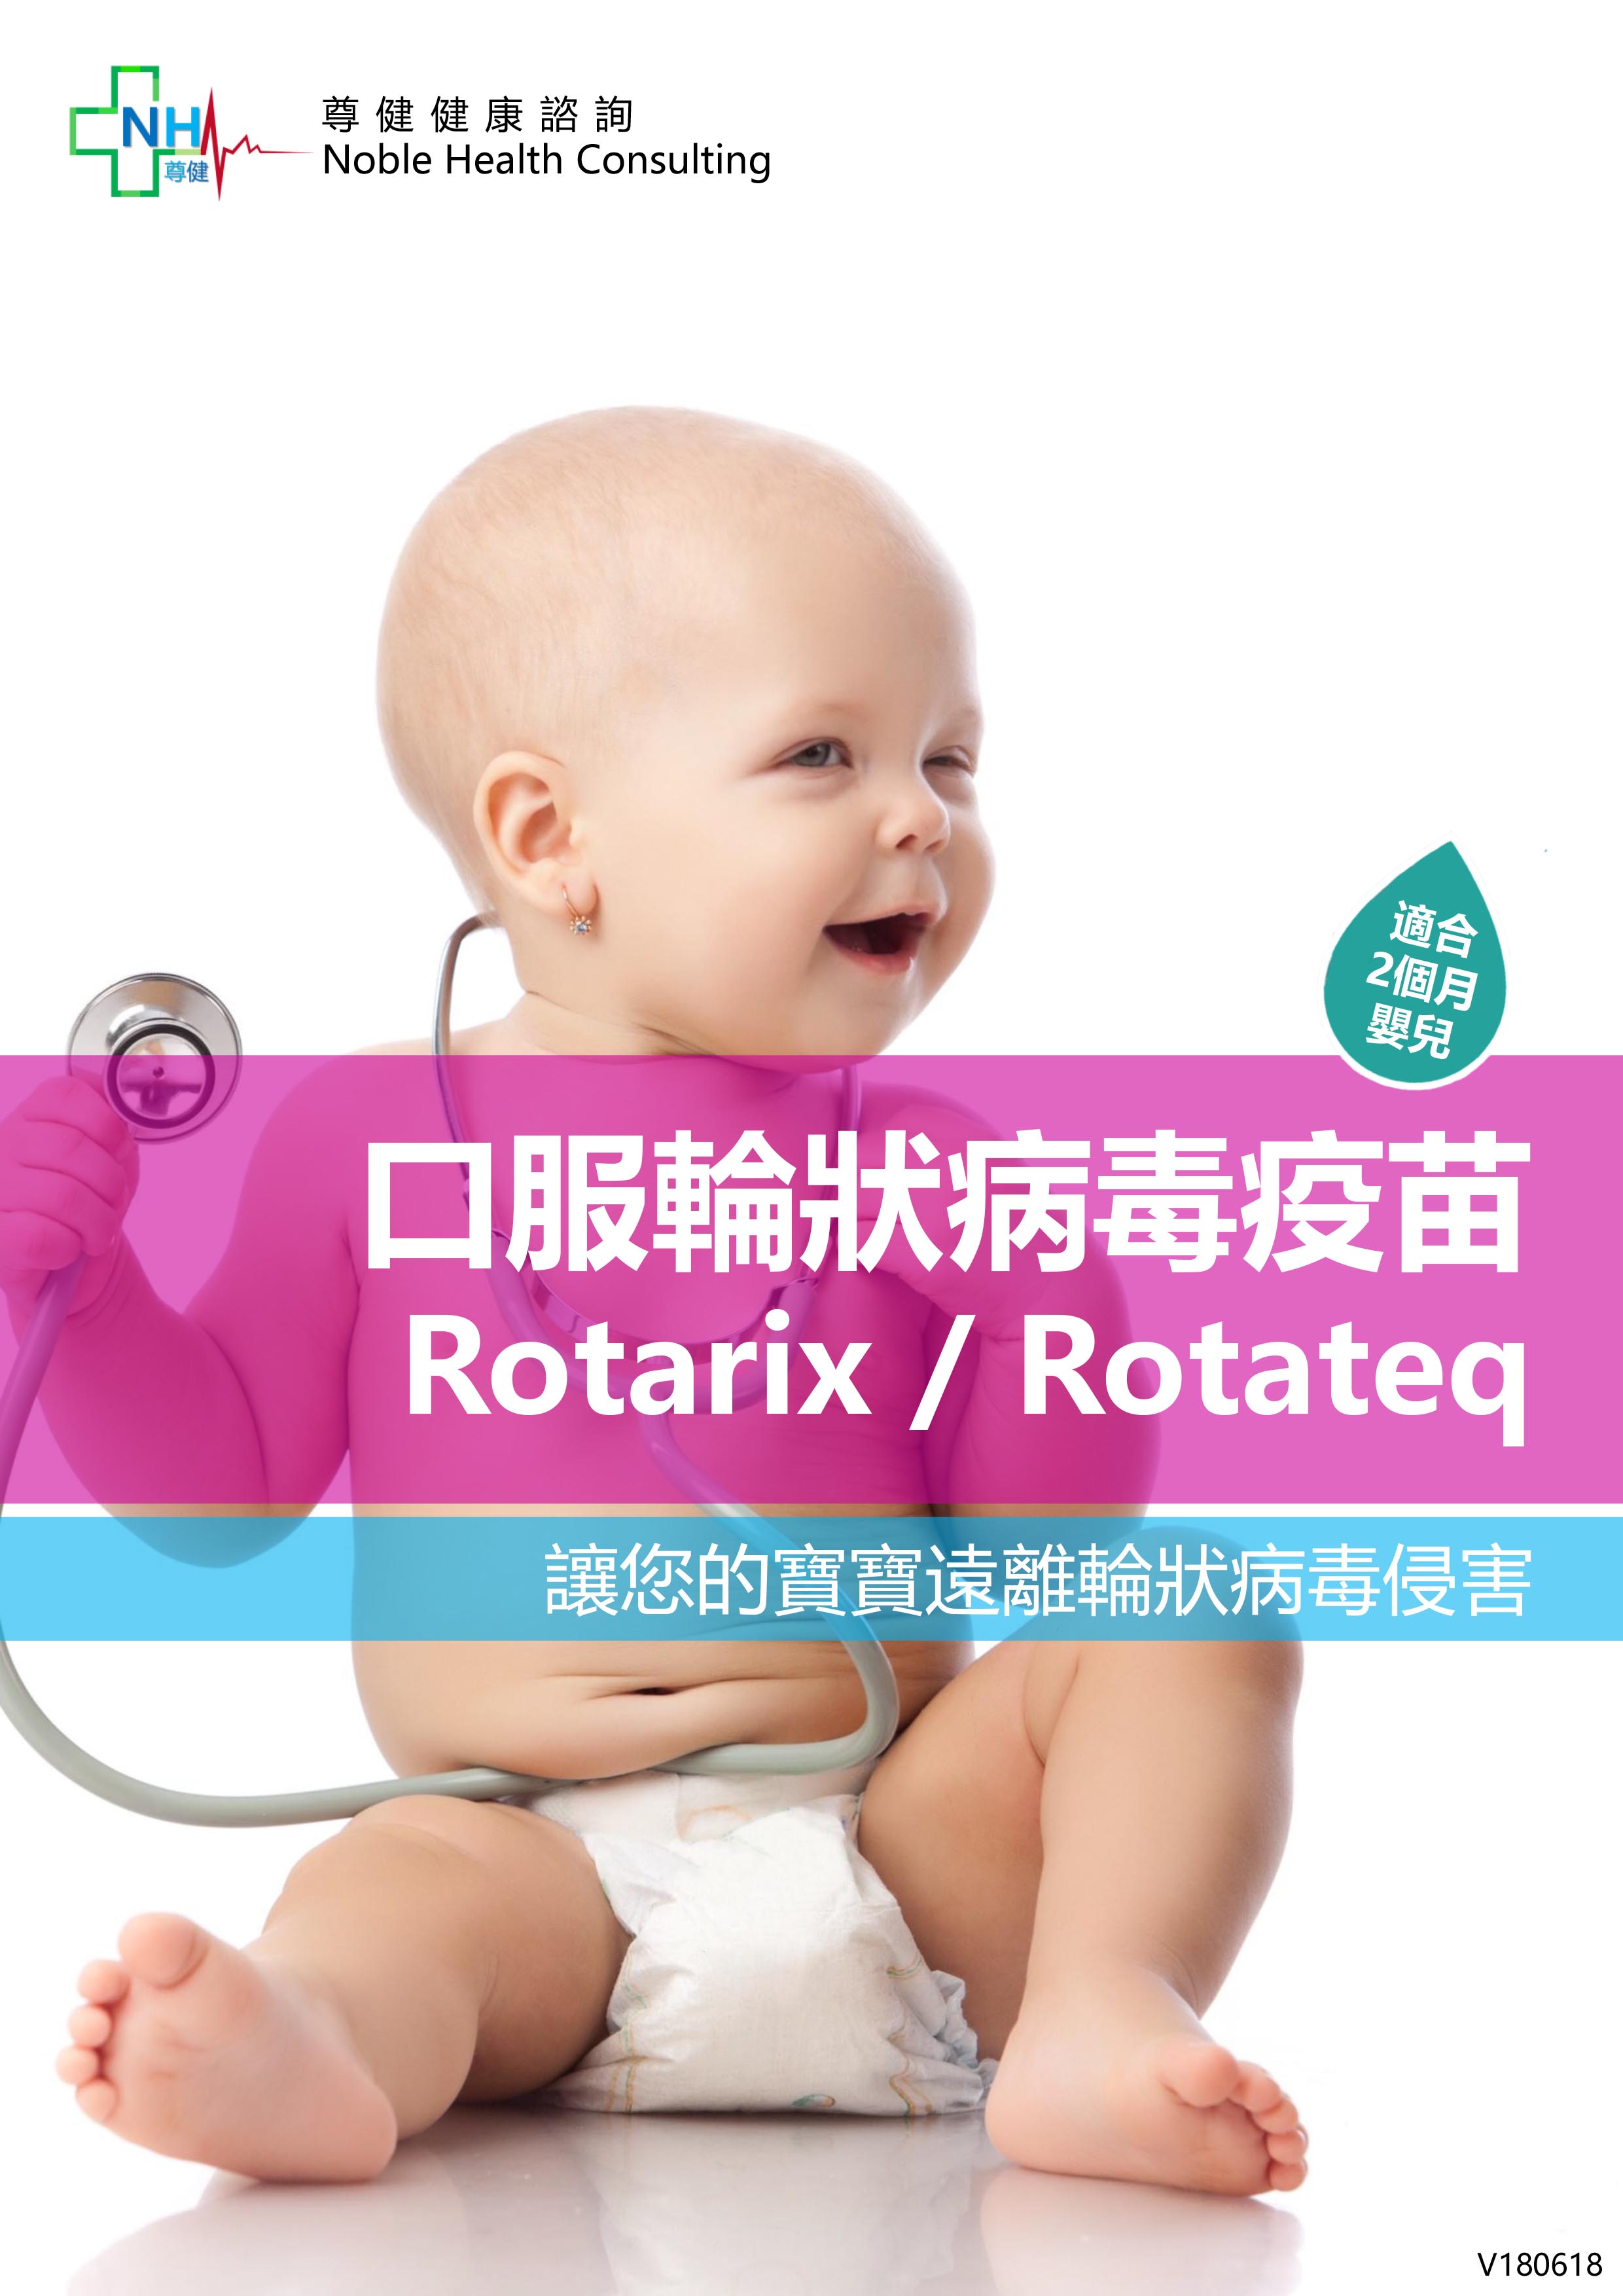 rotarix-and-rotateq-1.jpg